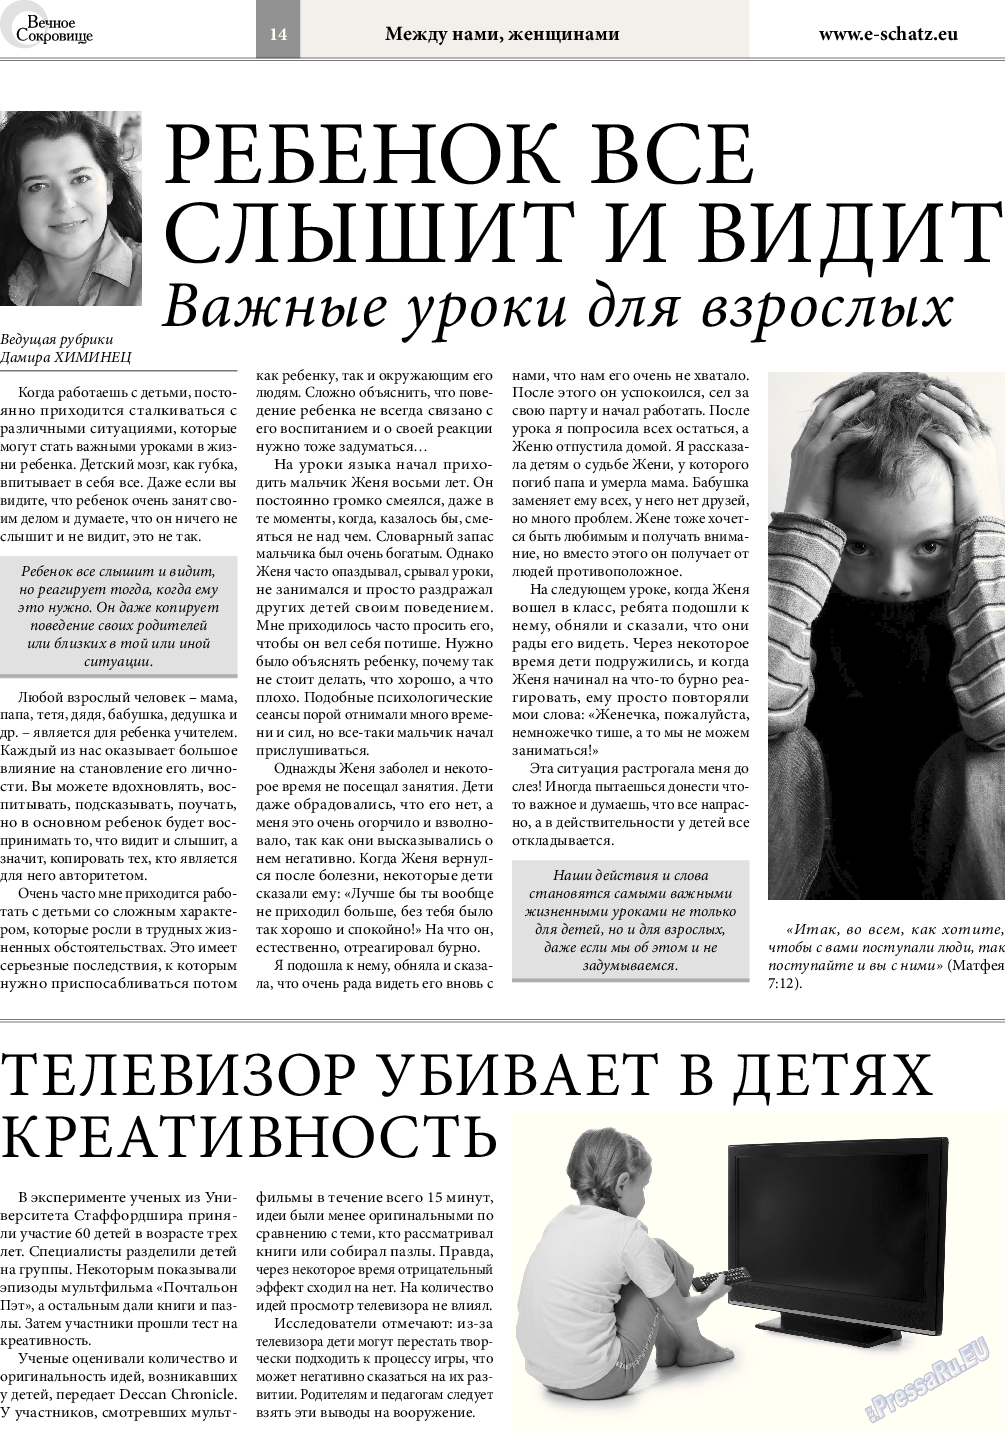 Вечное сокровище, газета. 2017 №3 стр.14